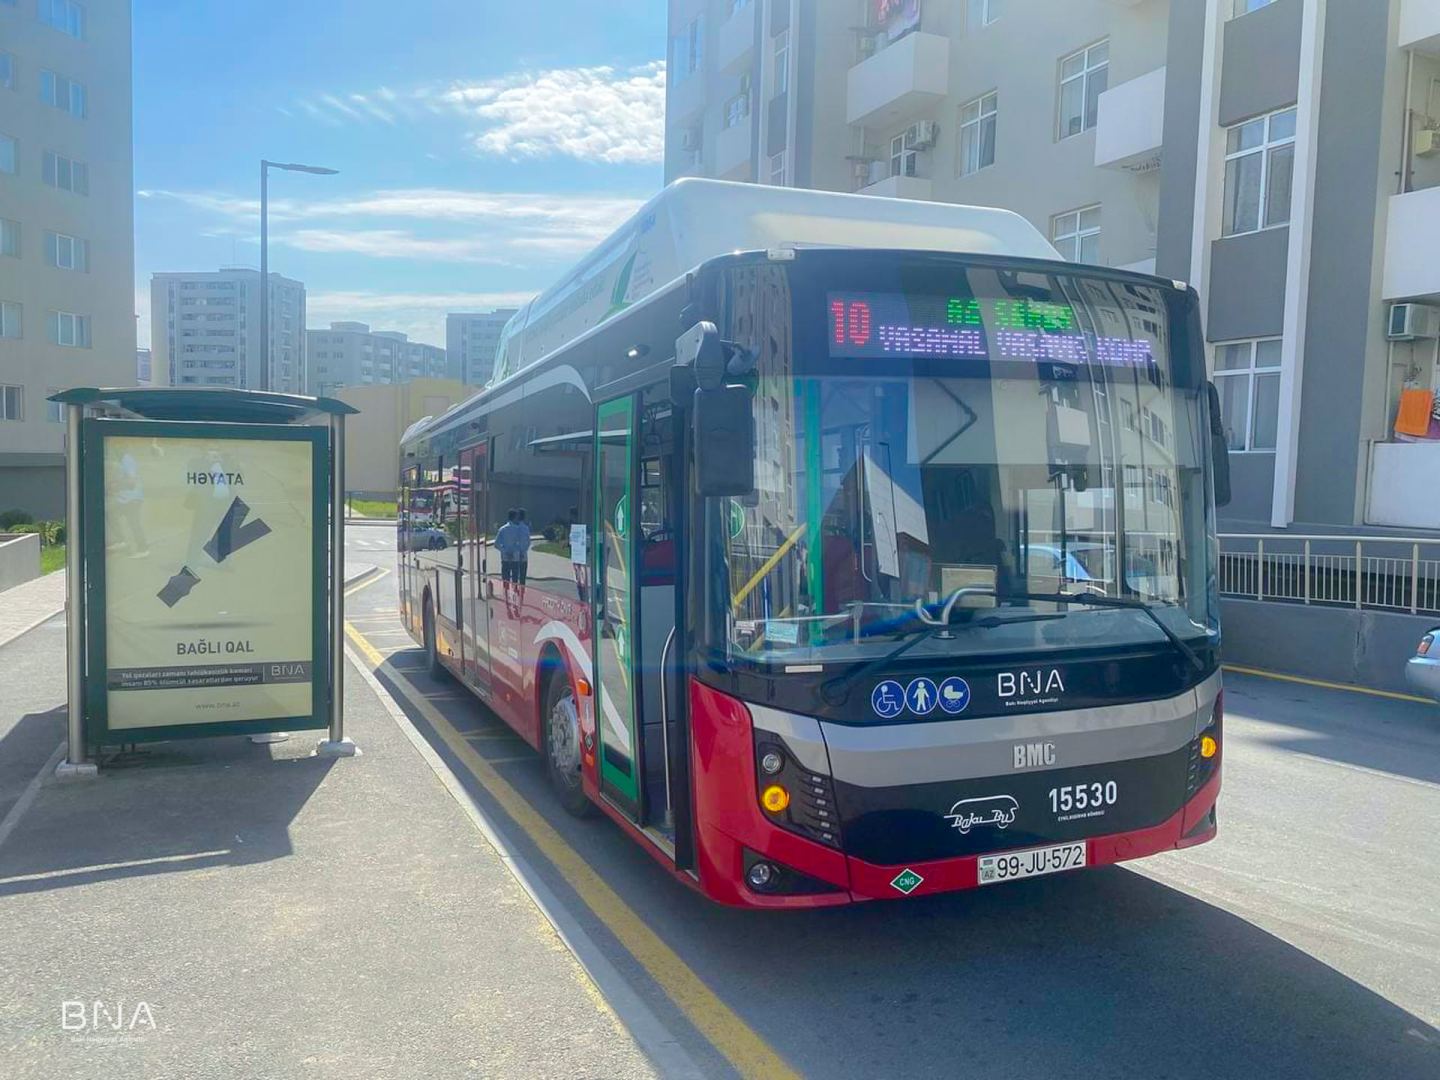 В Баку открылся новый автобусный маршрут (ФОТО)